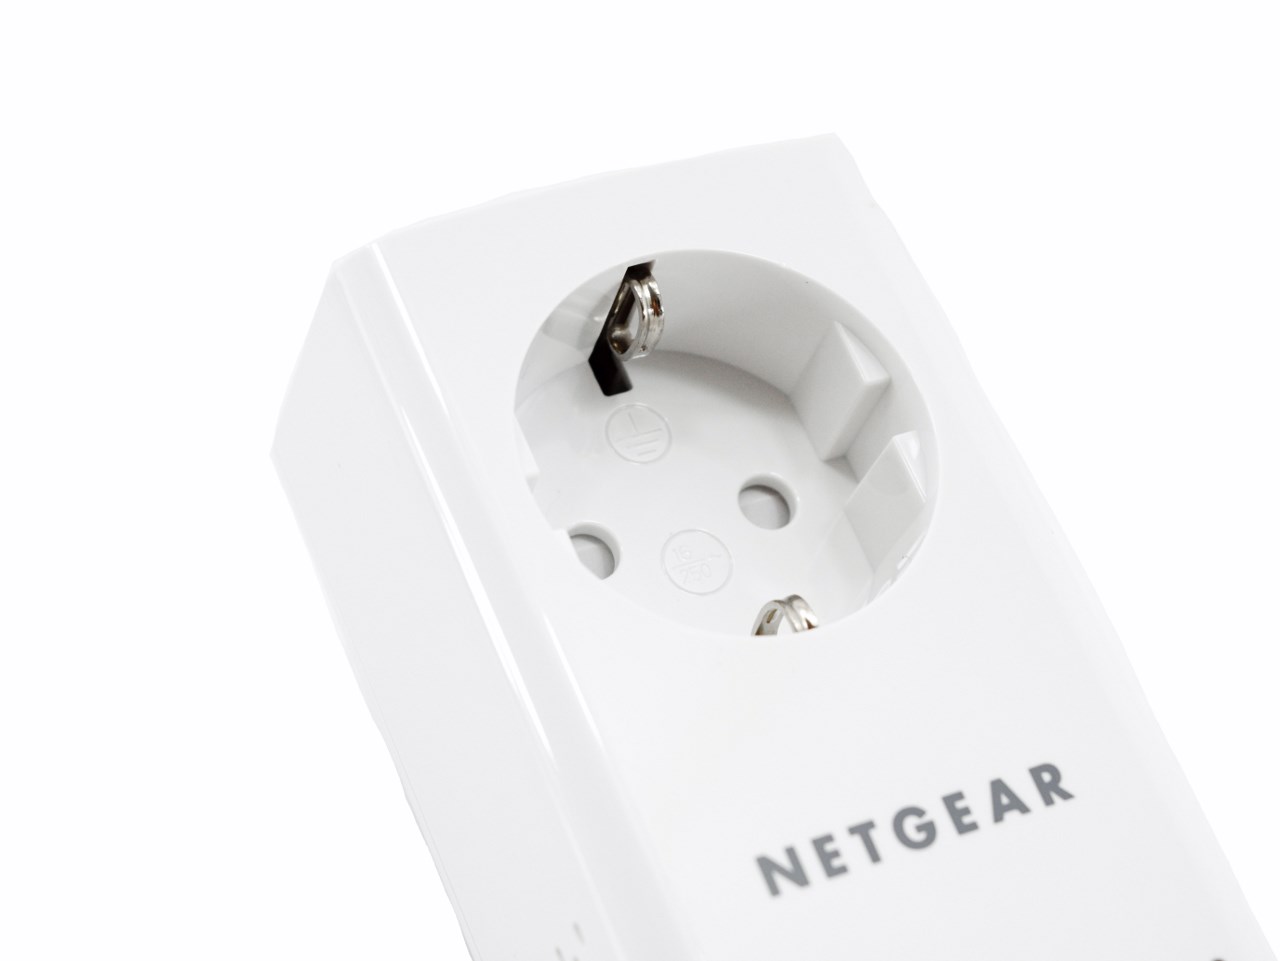 Netgear Powerline 1200 Network Adapter Review